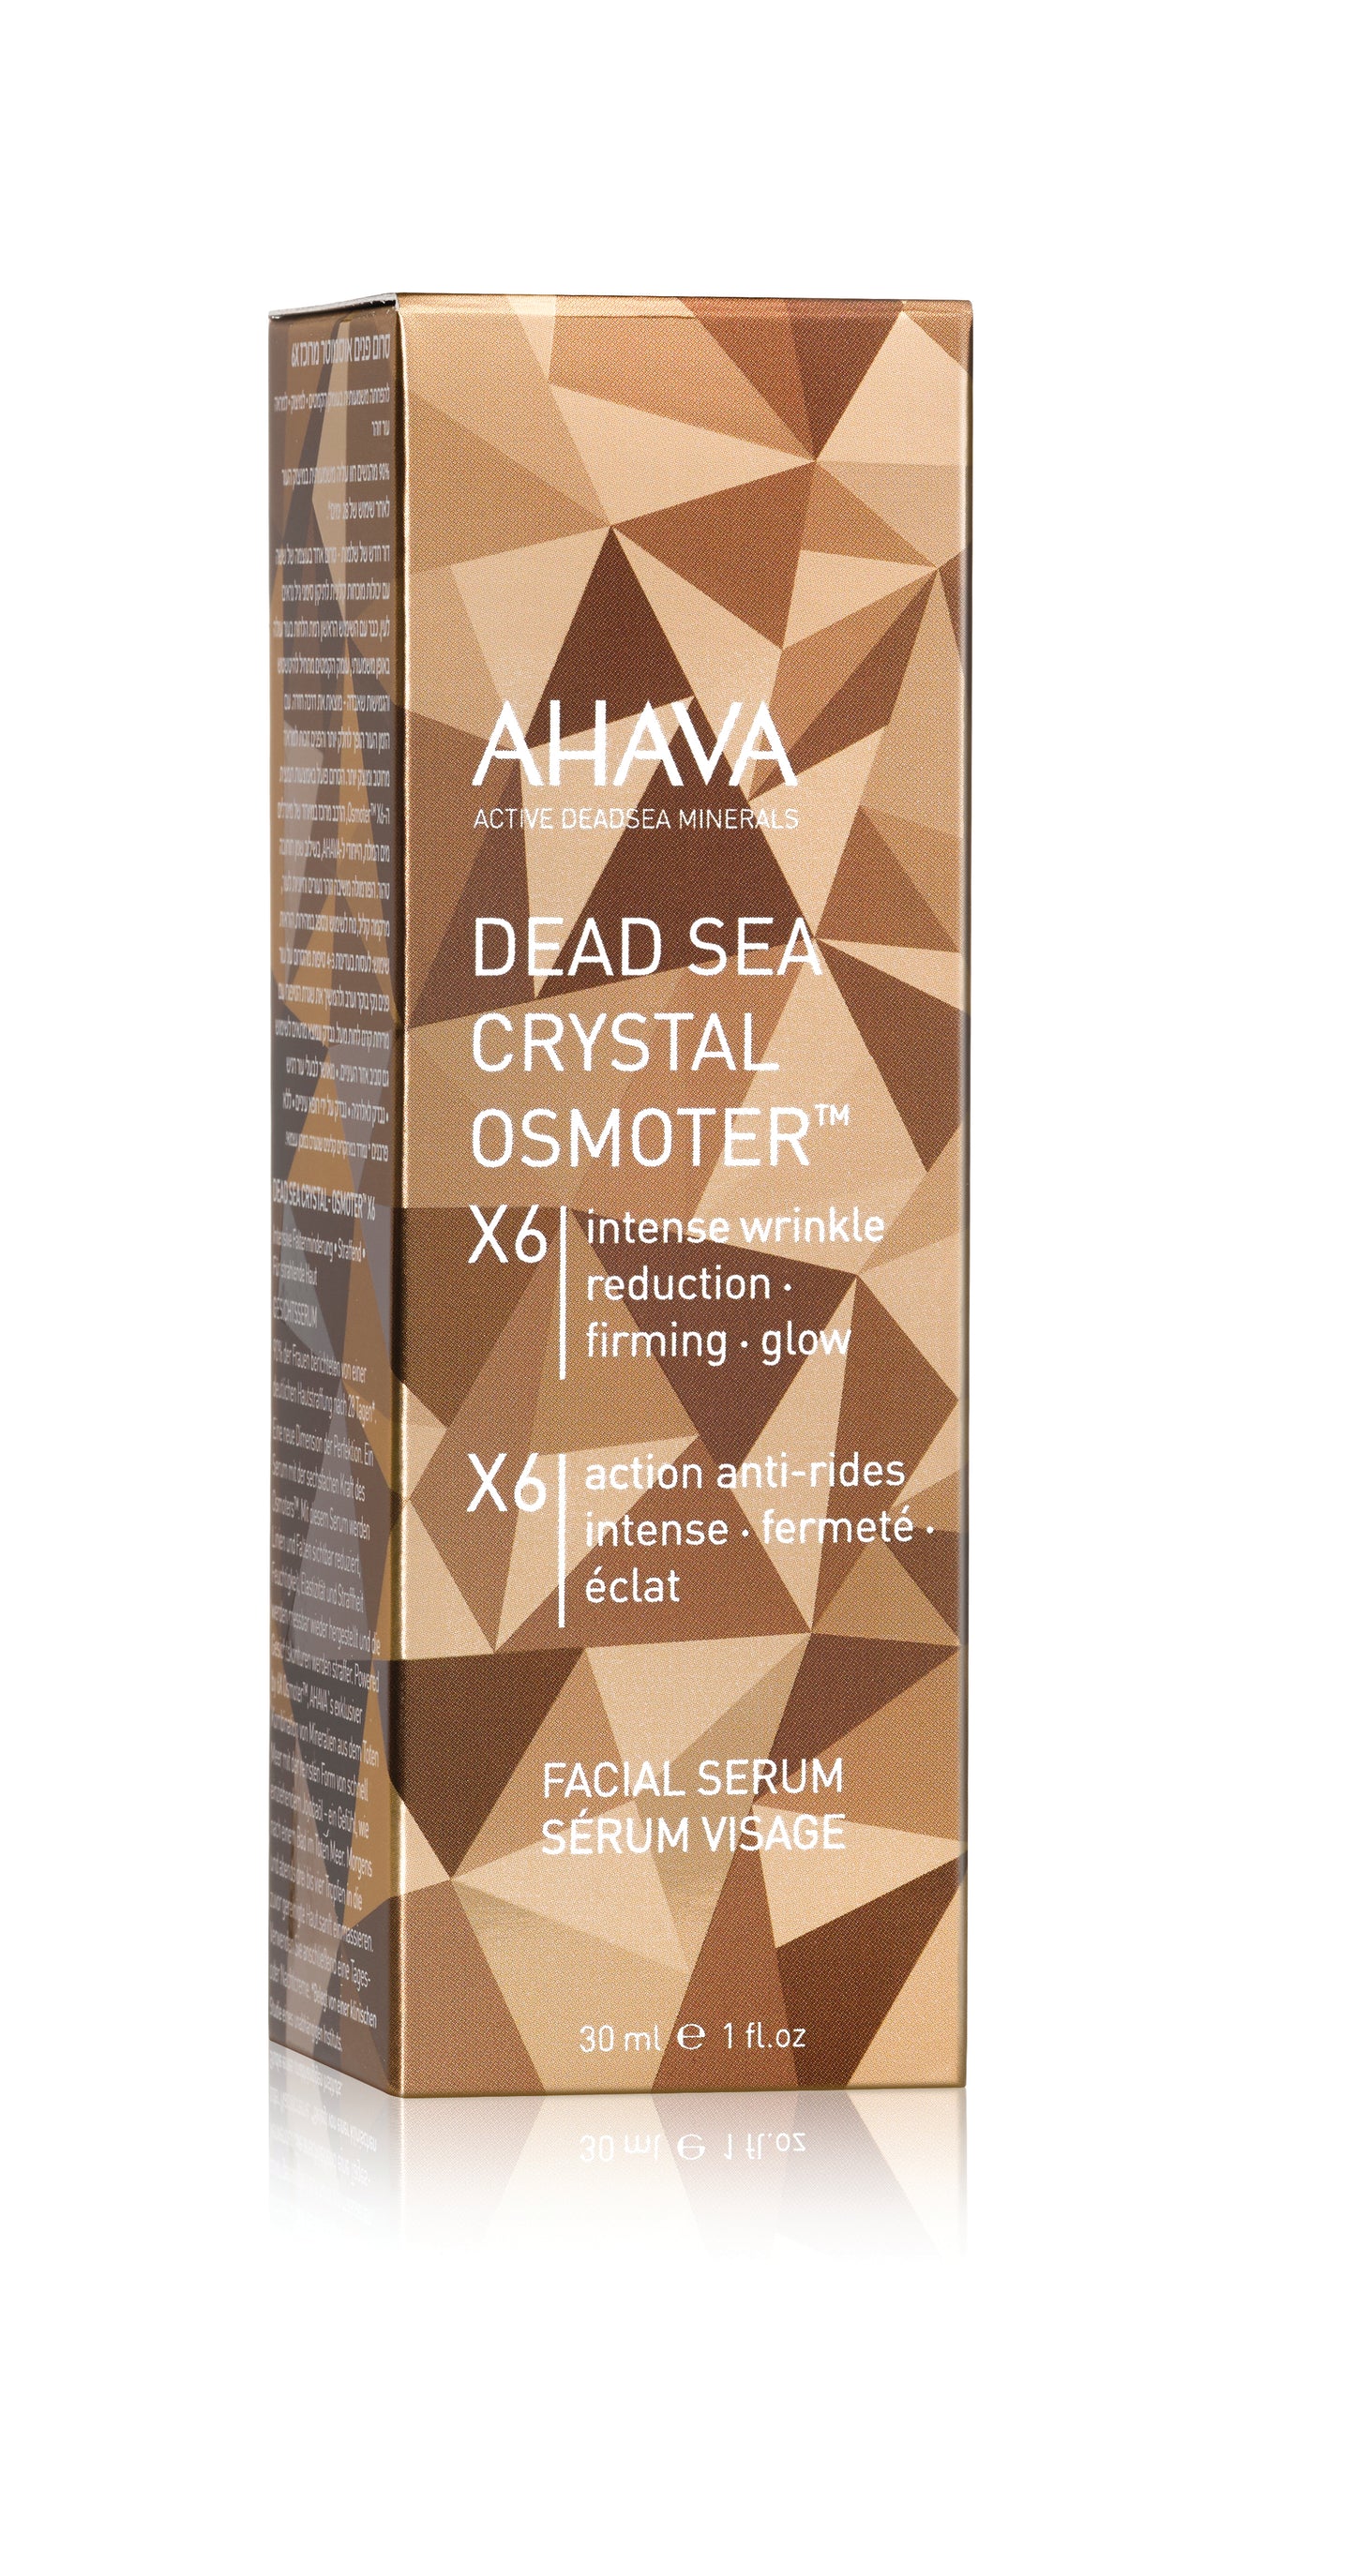 Dead Sea Crystal Osmoter X6